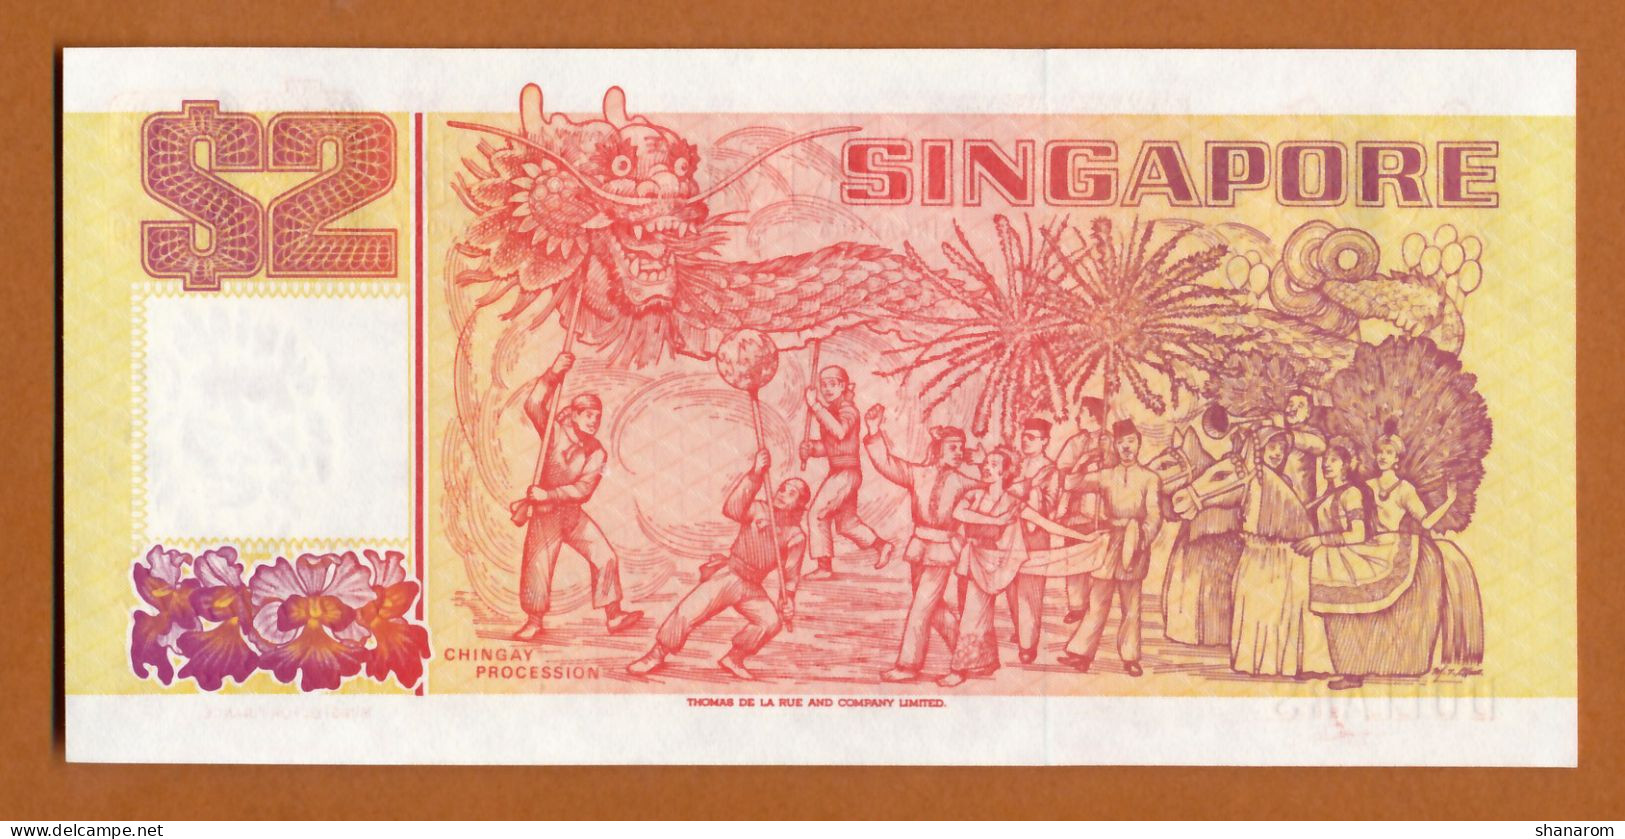 1990 // SINGAPORE // TWO DOLLARS // UNC-NEUF - Singapore